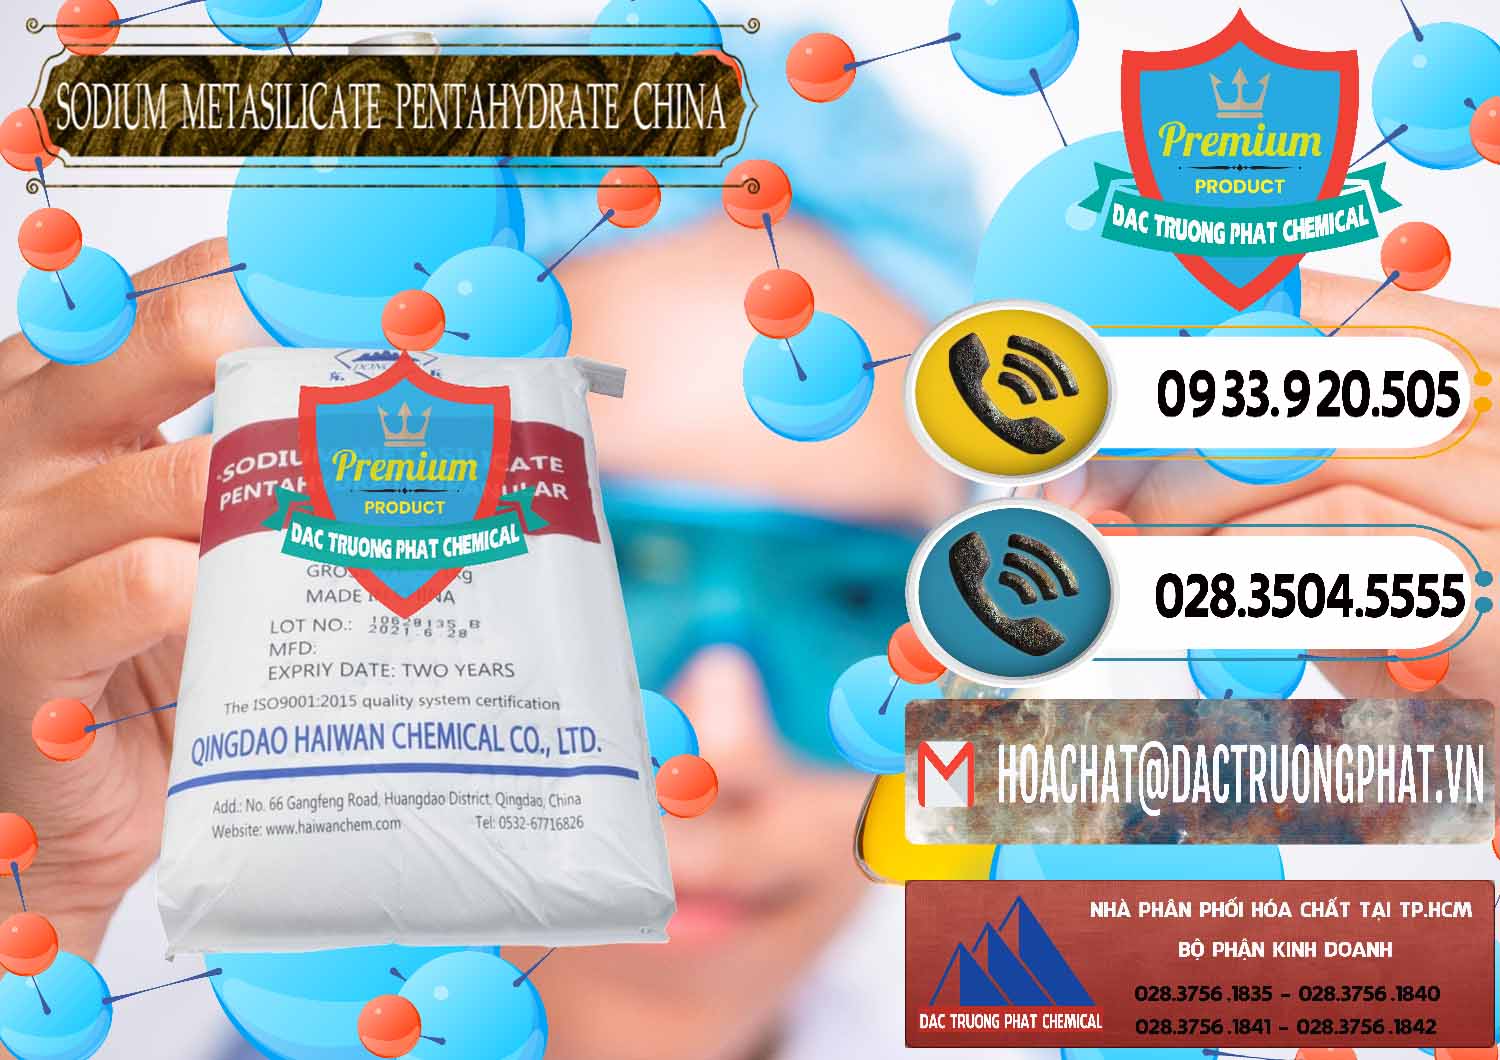 Đơn vị nhập khẩu và bán Sodium Metasilicate Pentahydrate – Silicate Bột Qingdao Trung Quốc China - 0452 - Đơn vị kinh doanh ( phân phối ) hóa chất tại TP.HCM - hoachatdetnhuom.vn